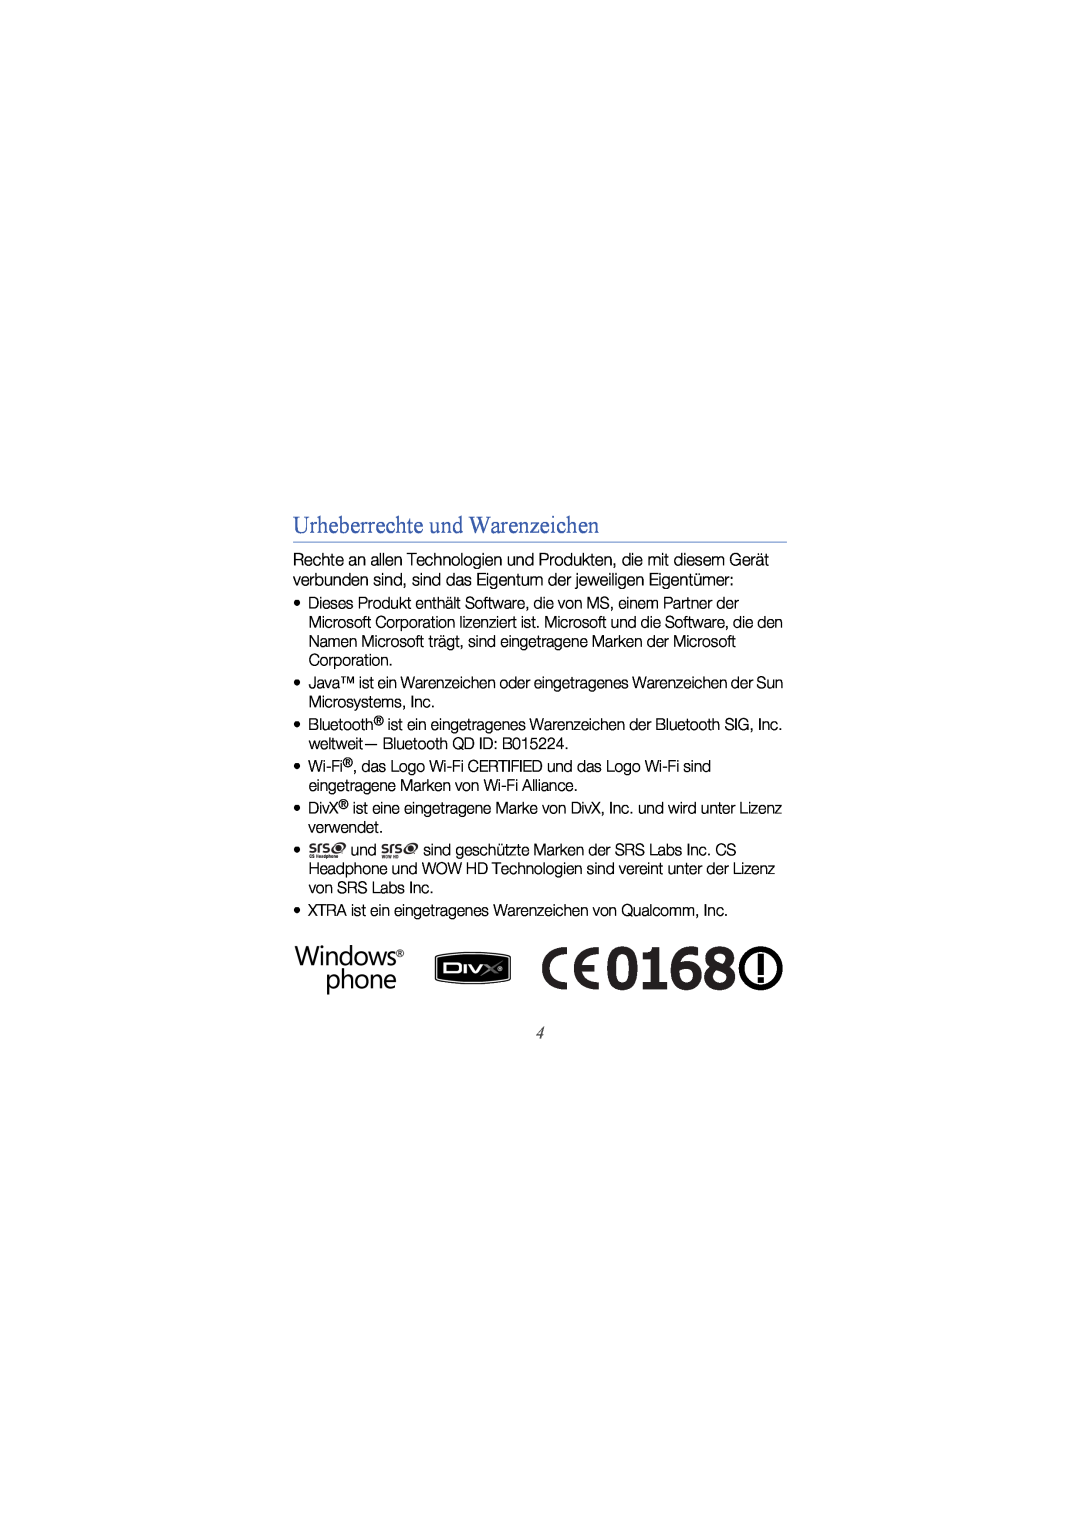 Samsung GT-I8000KKBDBT, GT-I8000DBBDBT, GT-I8000KKETUR, GT-I8000KKBTUR, GT-I8000KKADTM manual Urheberrechte und Warenzeichen 